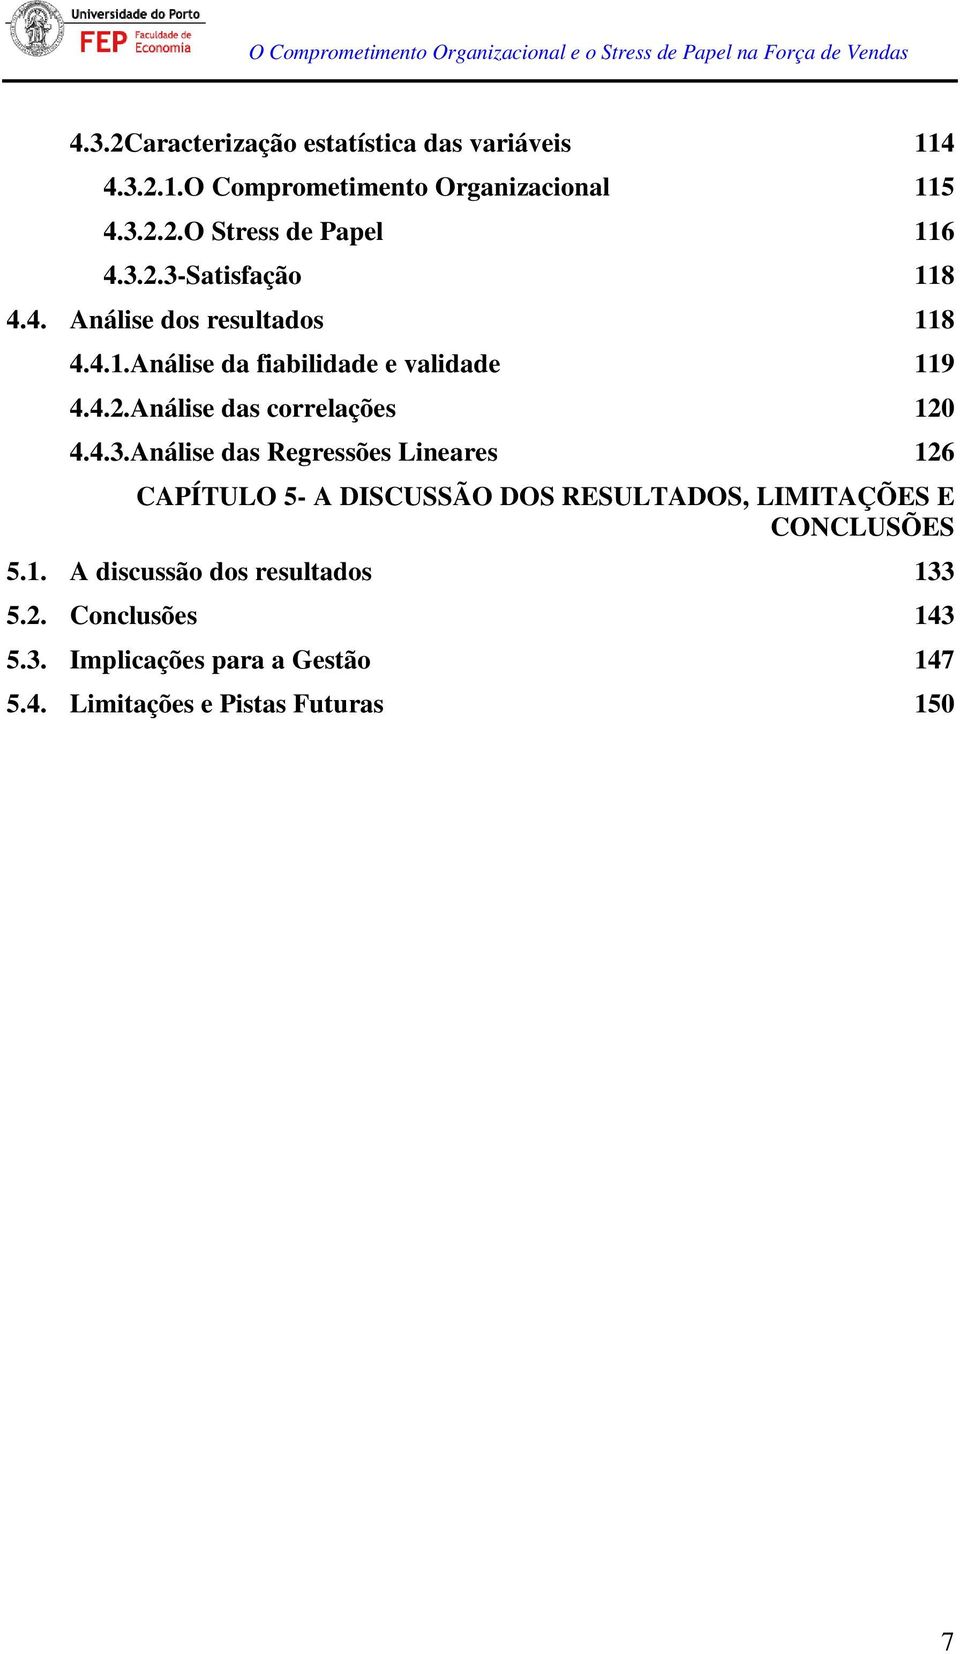 4.3.Análise das Regressões Lineares 126 CAPÍTULO 5- A DISCUSSÃO DOS RESULTADOS, LIMITAÇÕES E CONCLUSÕES 5.1. A discussão dos resultados 133 5.